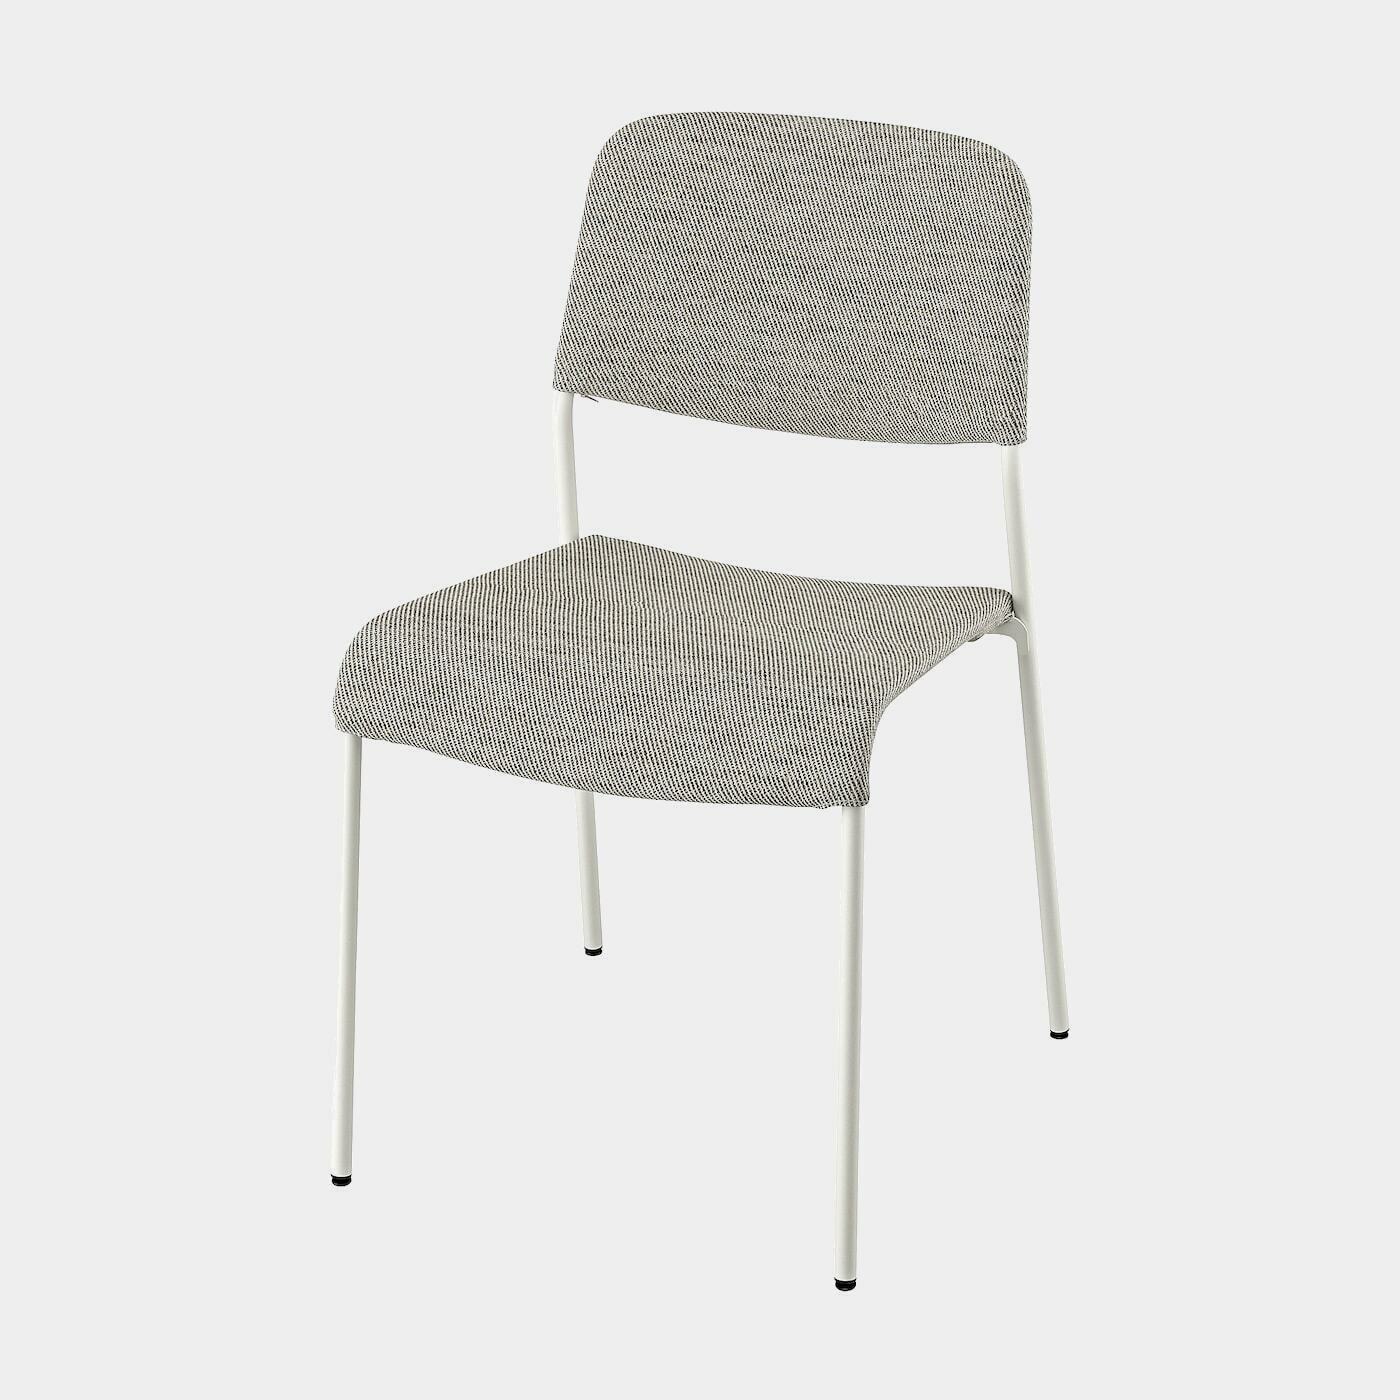 UDMUND Stuhl  -  - Möbel Ideen für dein Zuhause von Home Trends. Möbel Trends von Social Media Influencer für dein Skandi Zuhause.